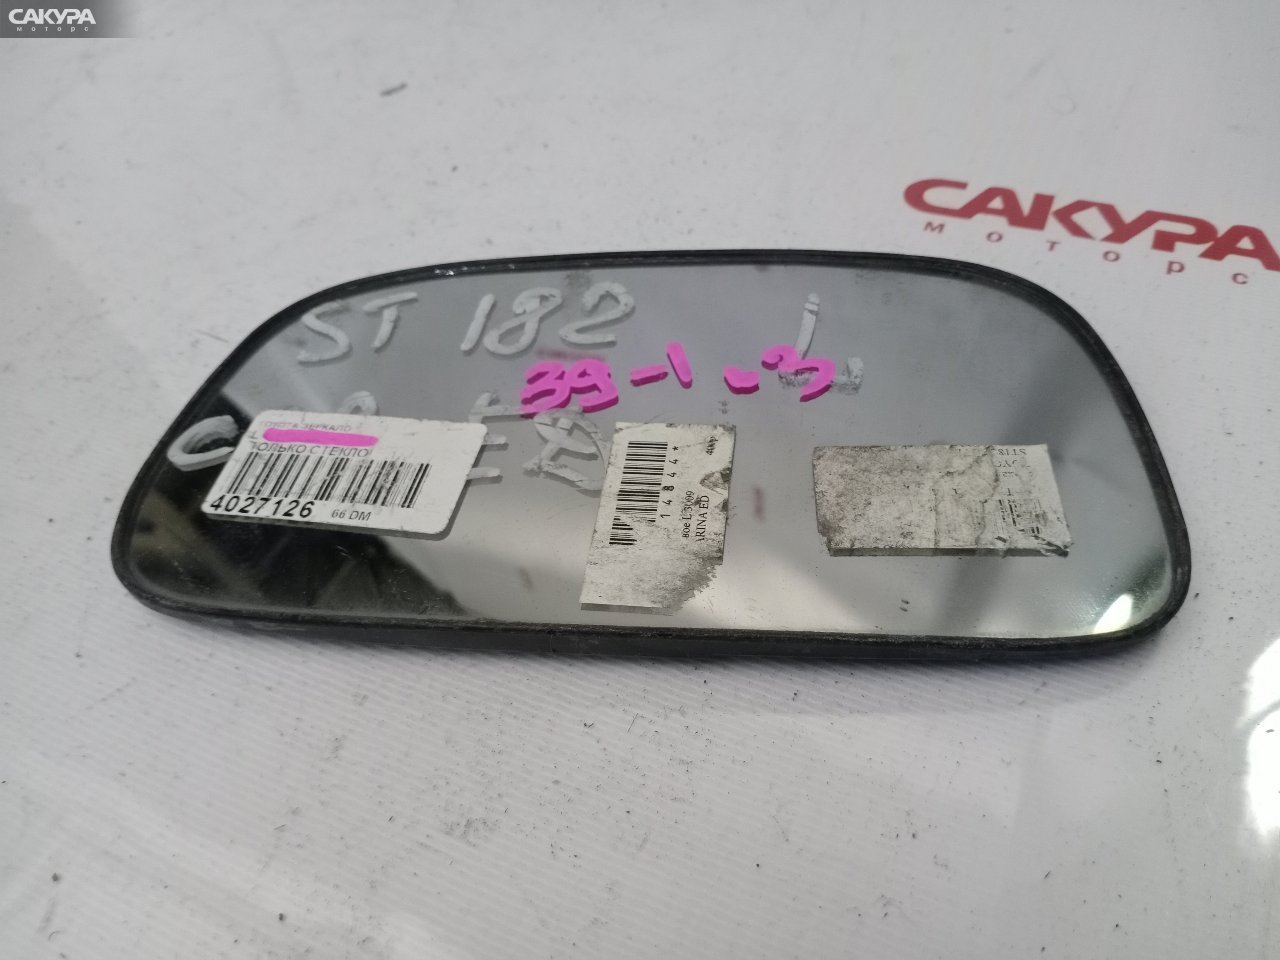 Зеркало боковое левое Toyota Carina ED ST182 3S-FE: купить в Сакура Красноярск.